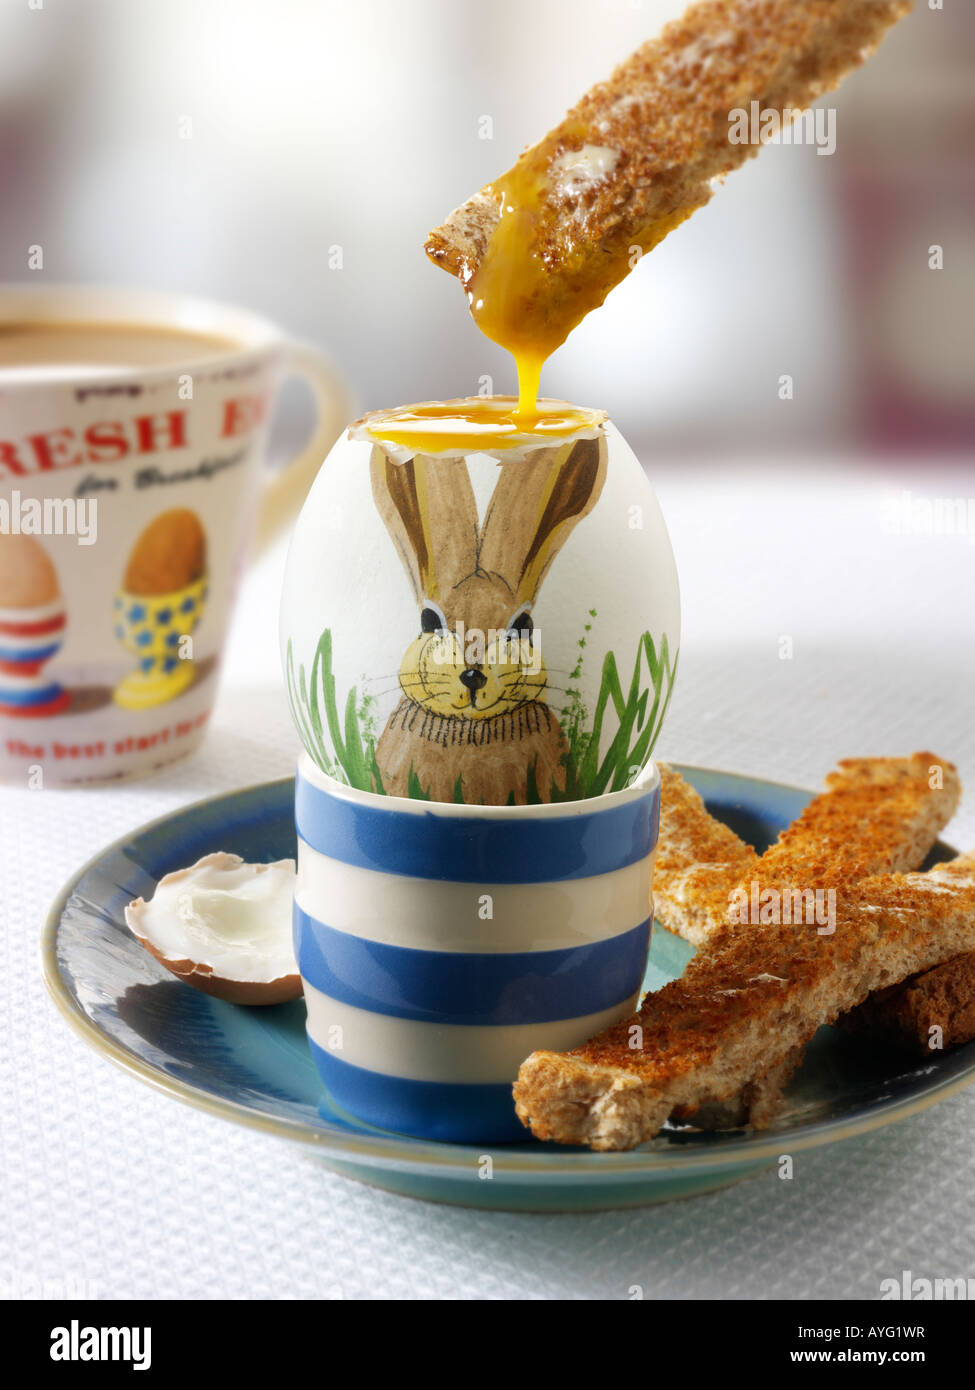 Traditionelle handbemalte dekoriert gekochte Oster hase Ei in ein Frühstück mit Toast, getaucht in das Ei Stockfoto